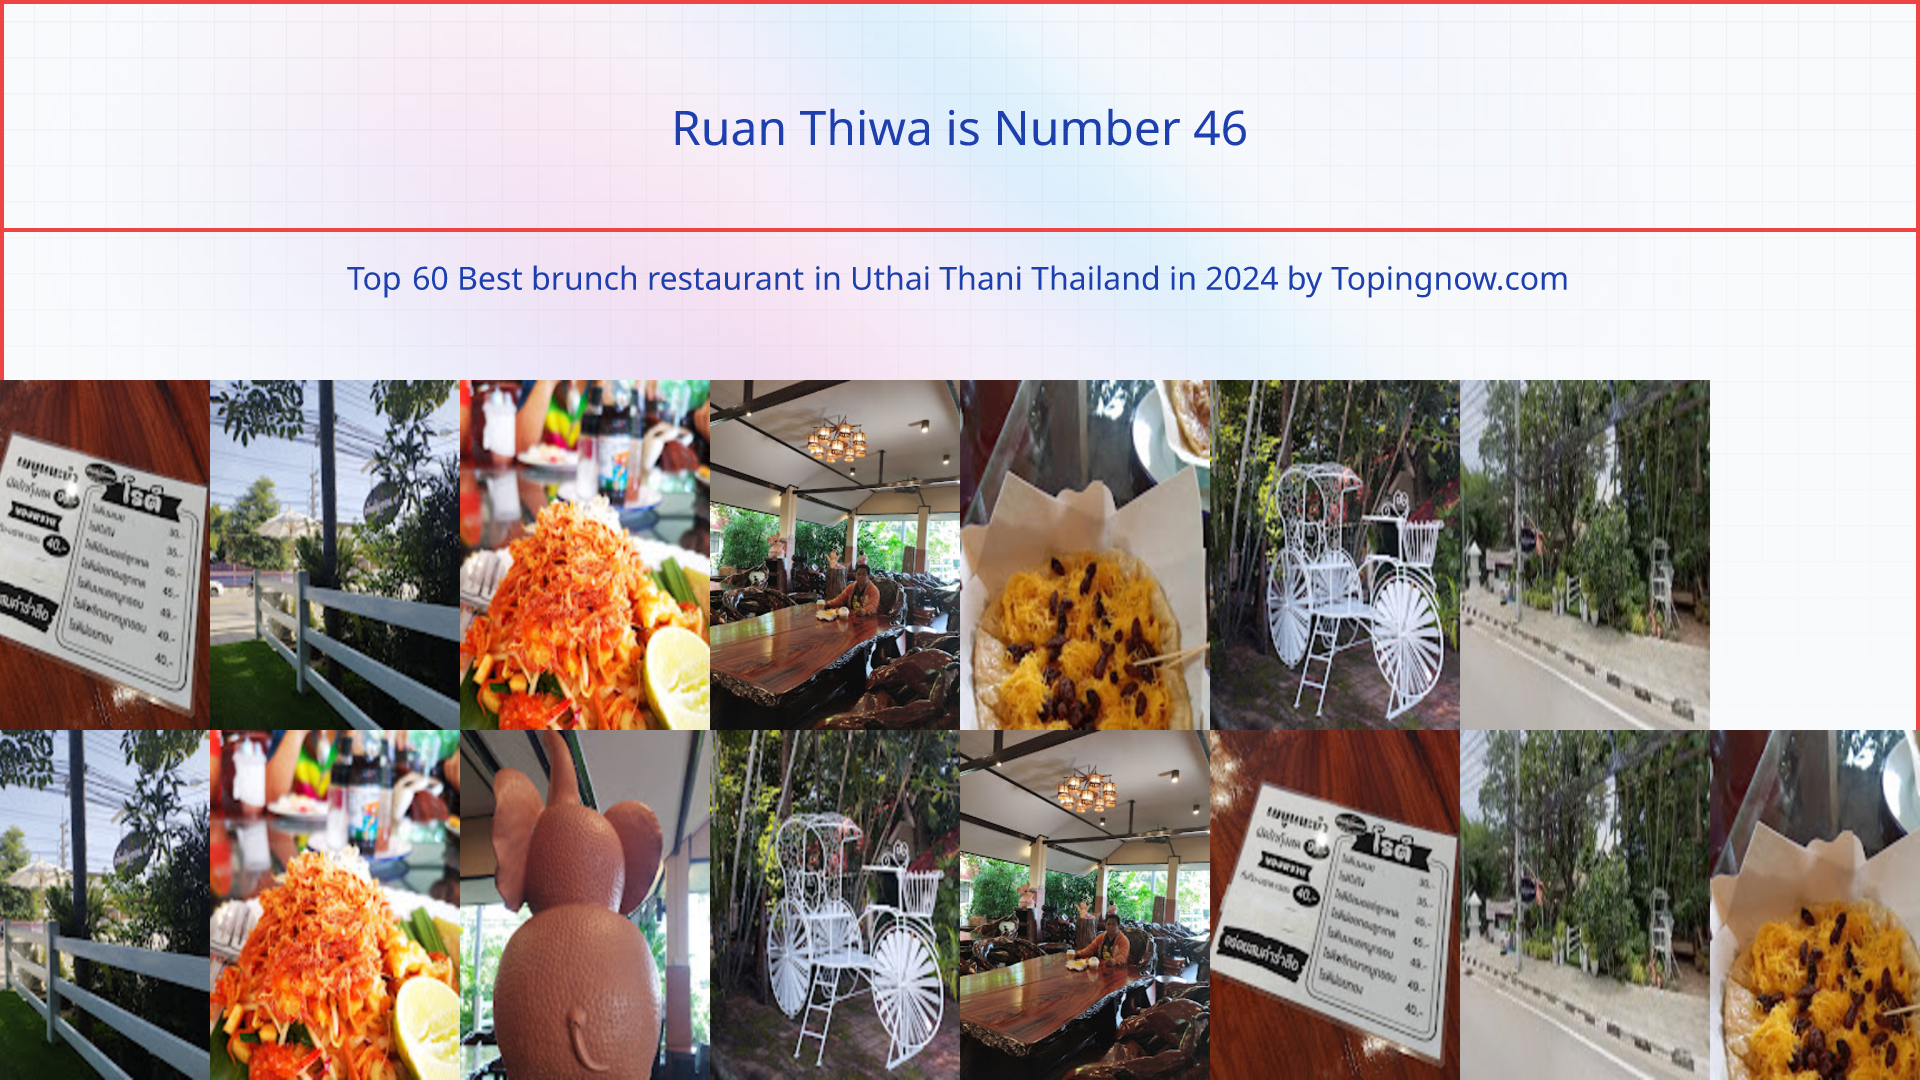 Ruan Thiwa: Top 60 Best brunch restaurant in Uthai Thani Thailand in 2024